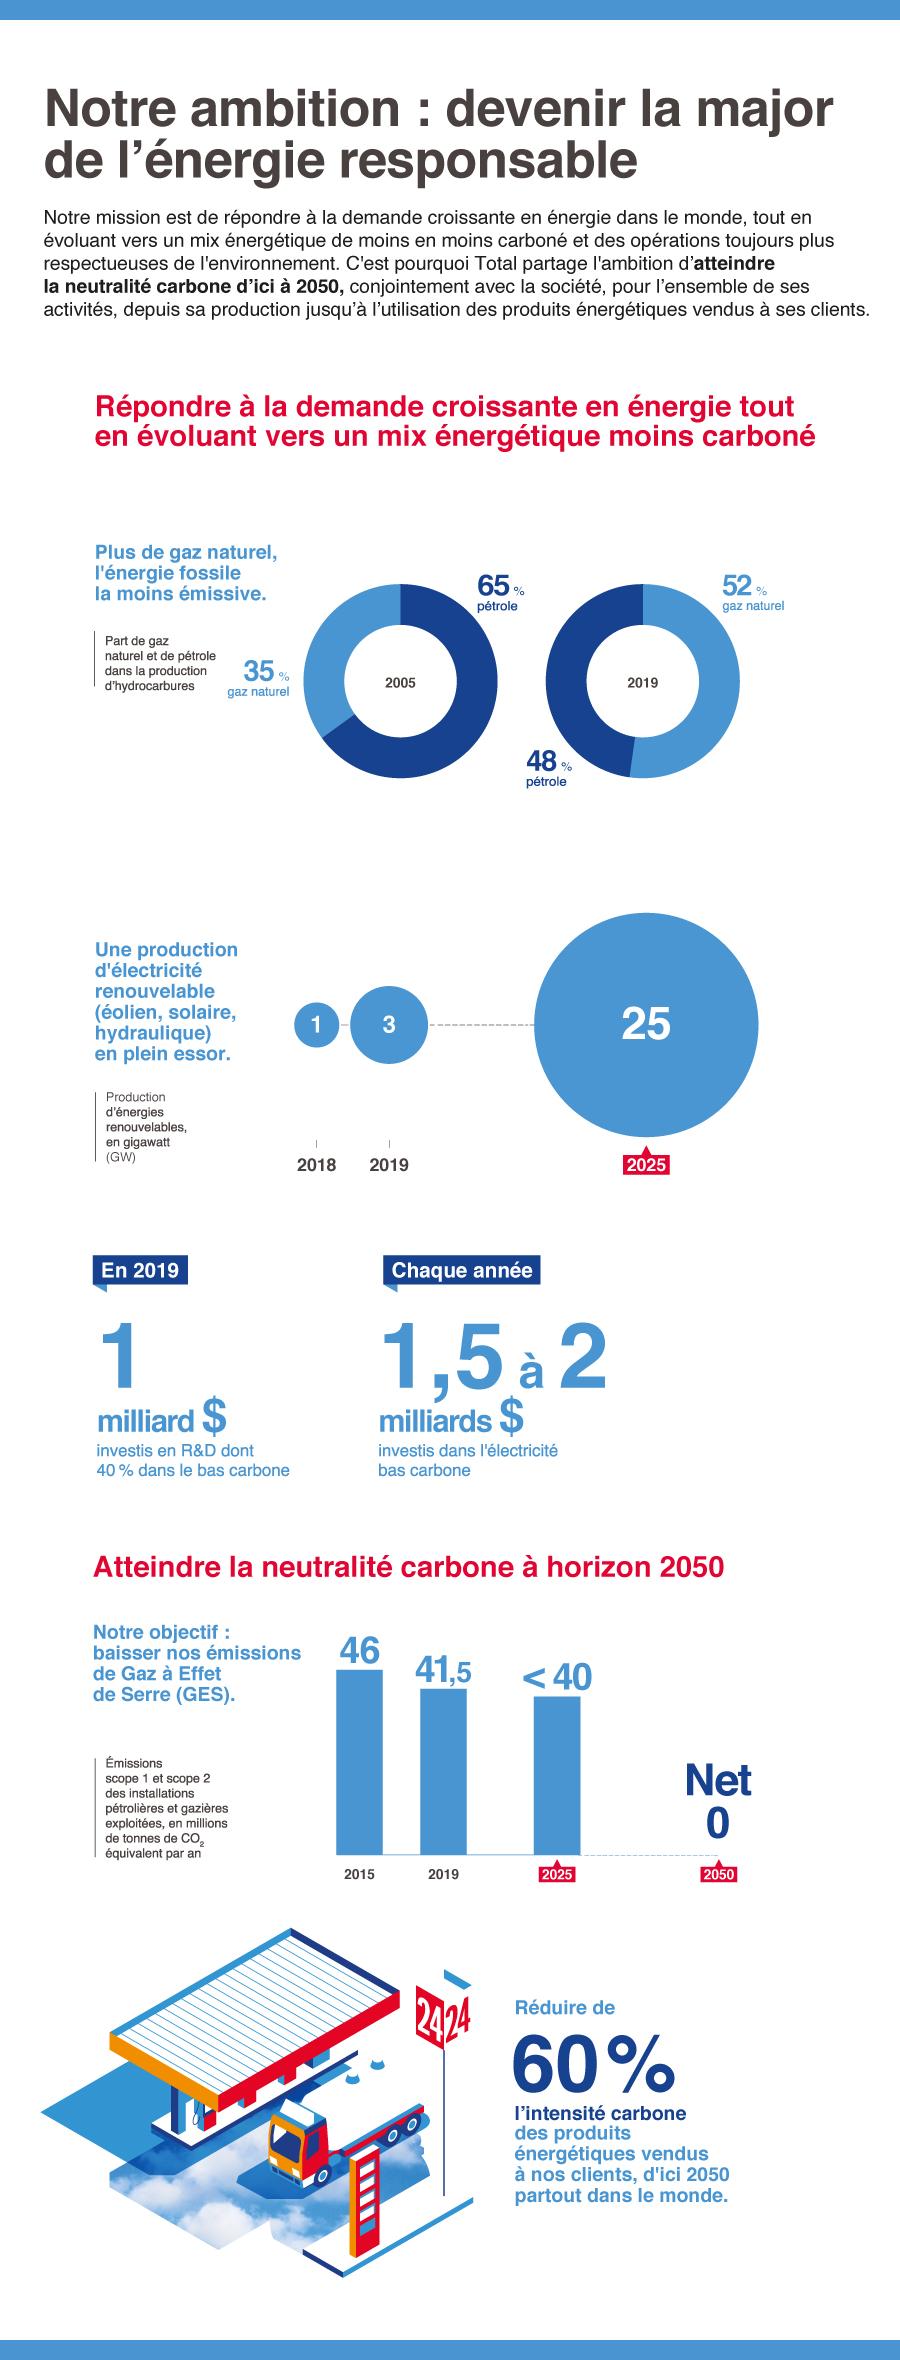 Infographie présentant l’ambition climat de TotalEnergies en quelques chiffres